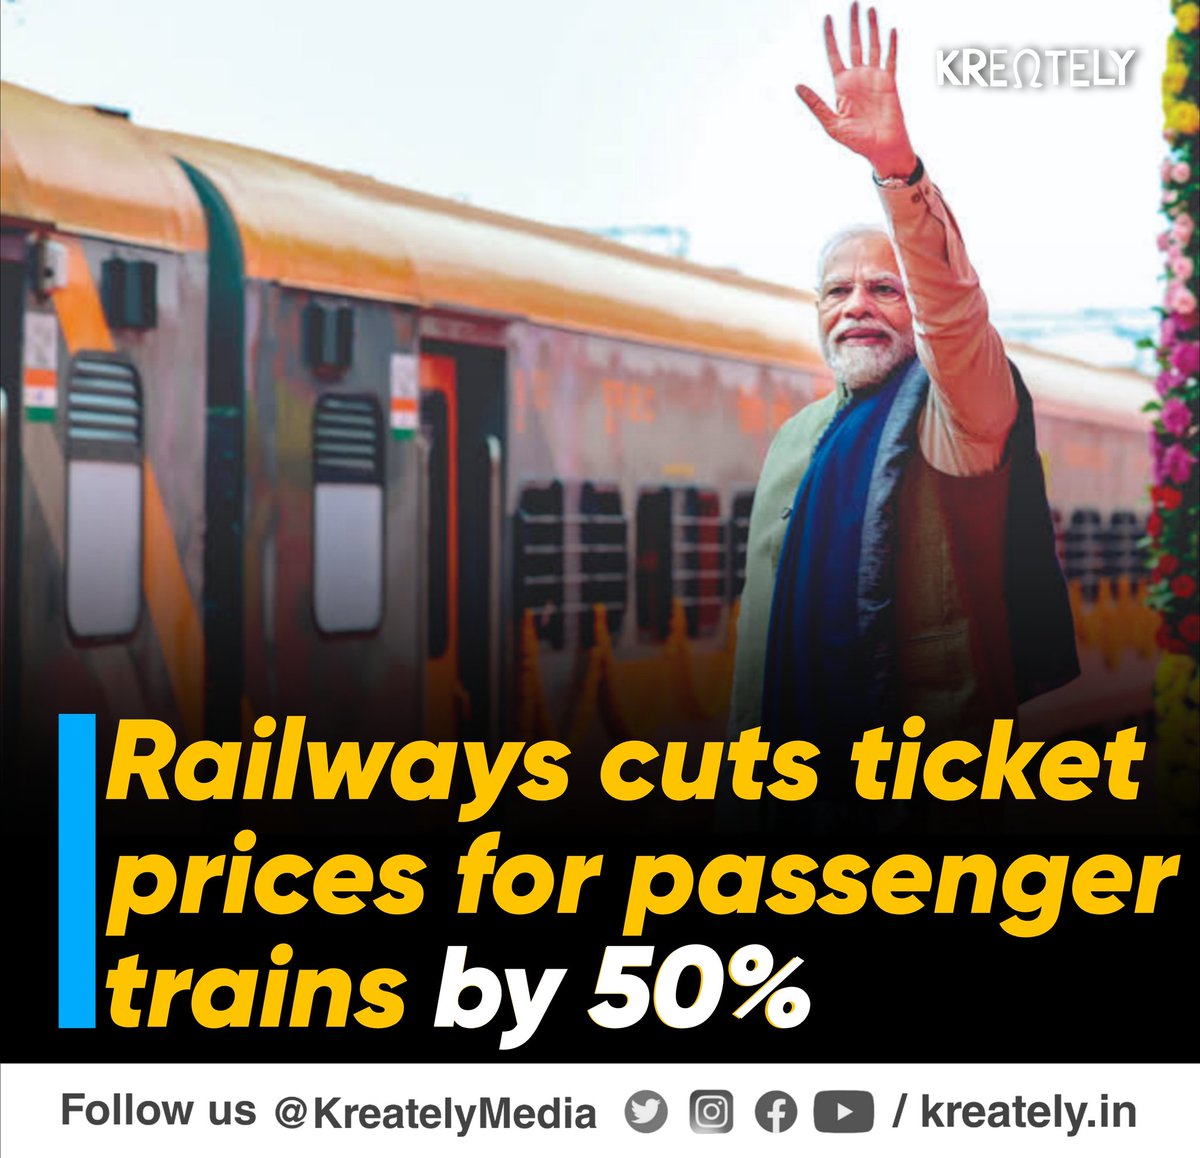 एक तो passenger चलती ही कम हैं।टिकट का दाम उतना ही रखो ट्रेन की संख्या +speed बढ़ाओ और सुविधा अच्छी दो । हर जगह double triple लाइन बनाओ 
#IndianRailway
#NarendraModi 
#RailwayTicket 
#Railway
#AshwiniVaishnaw
#BJP